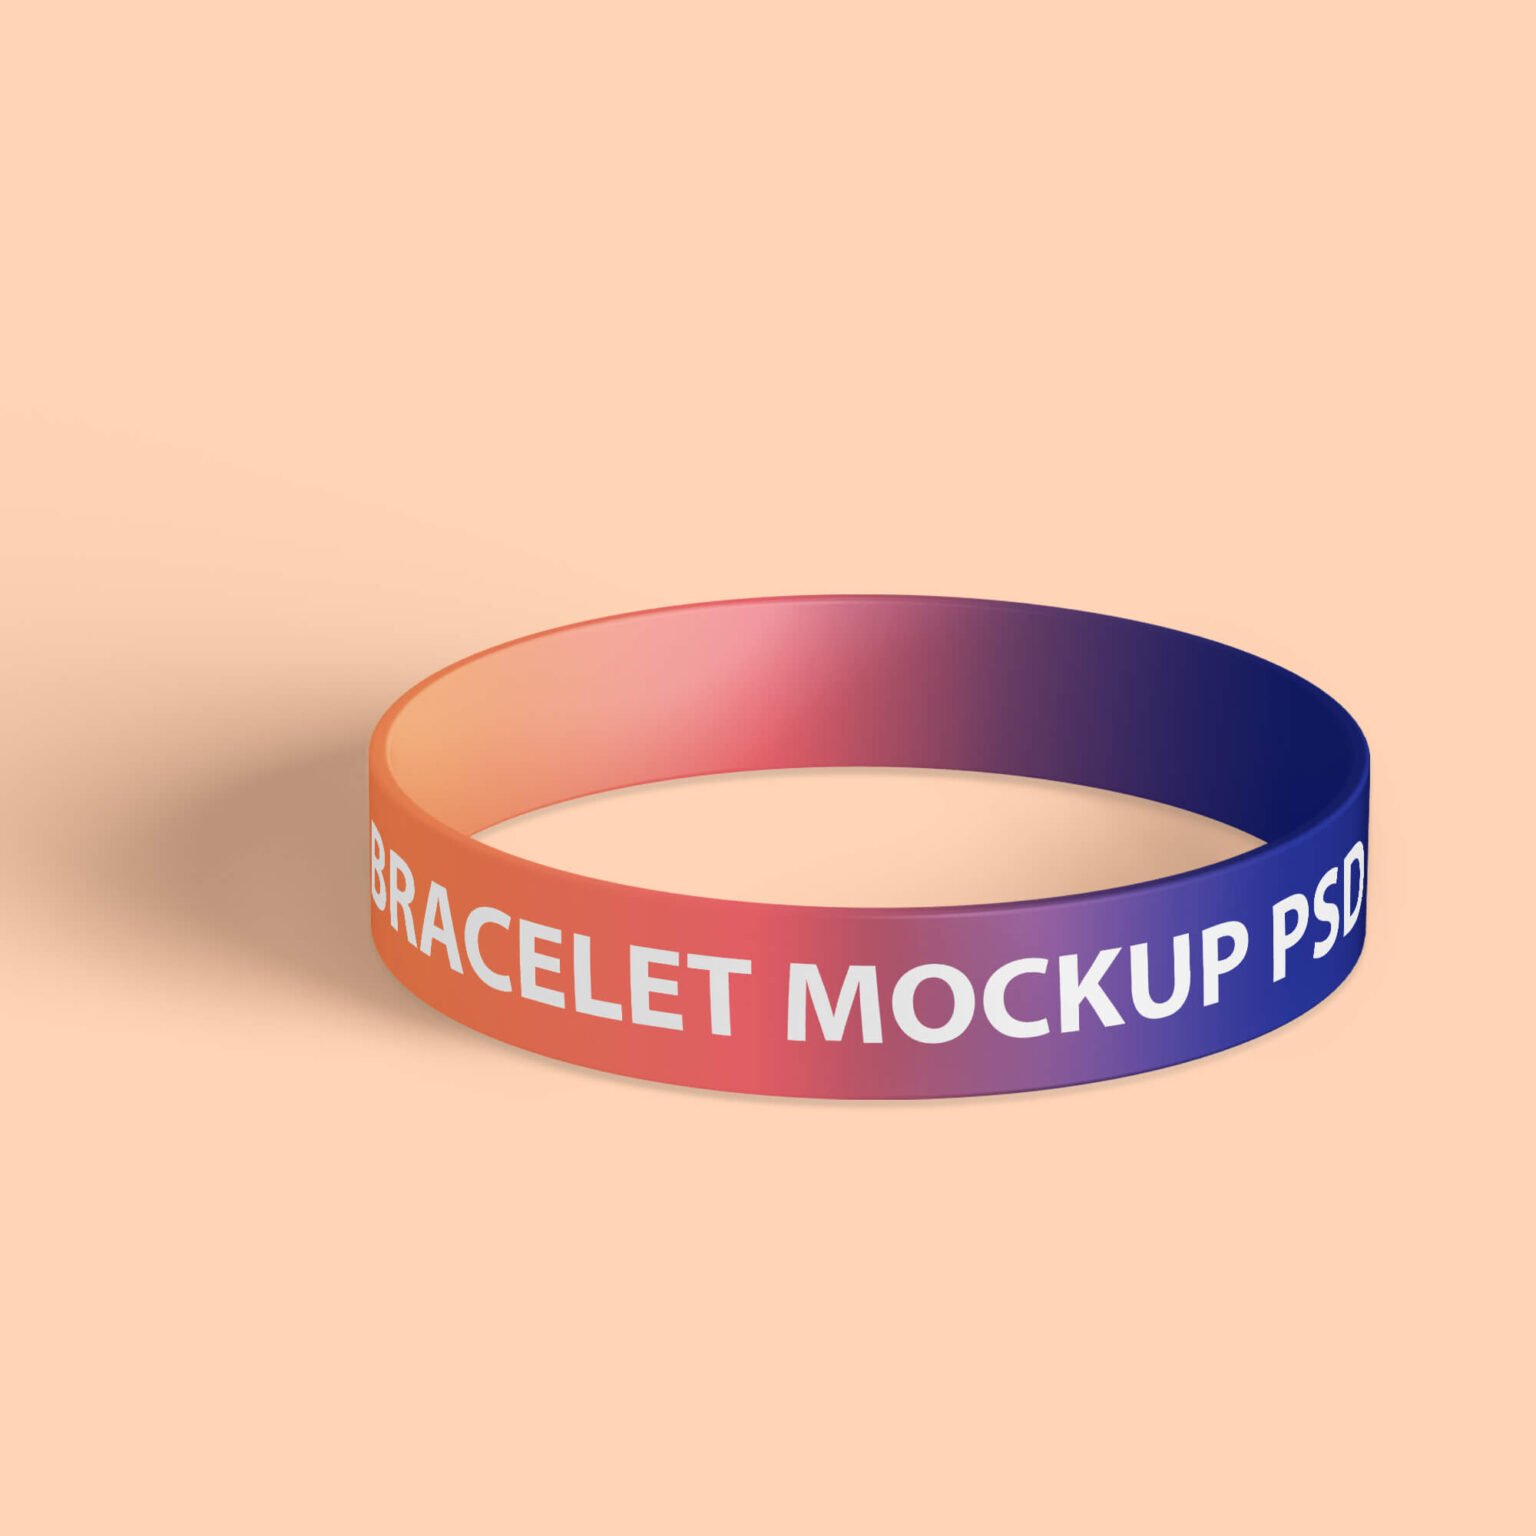 Download Free Bracelet mockup PSD Template - Mockup Den